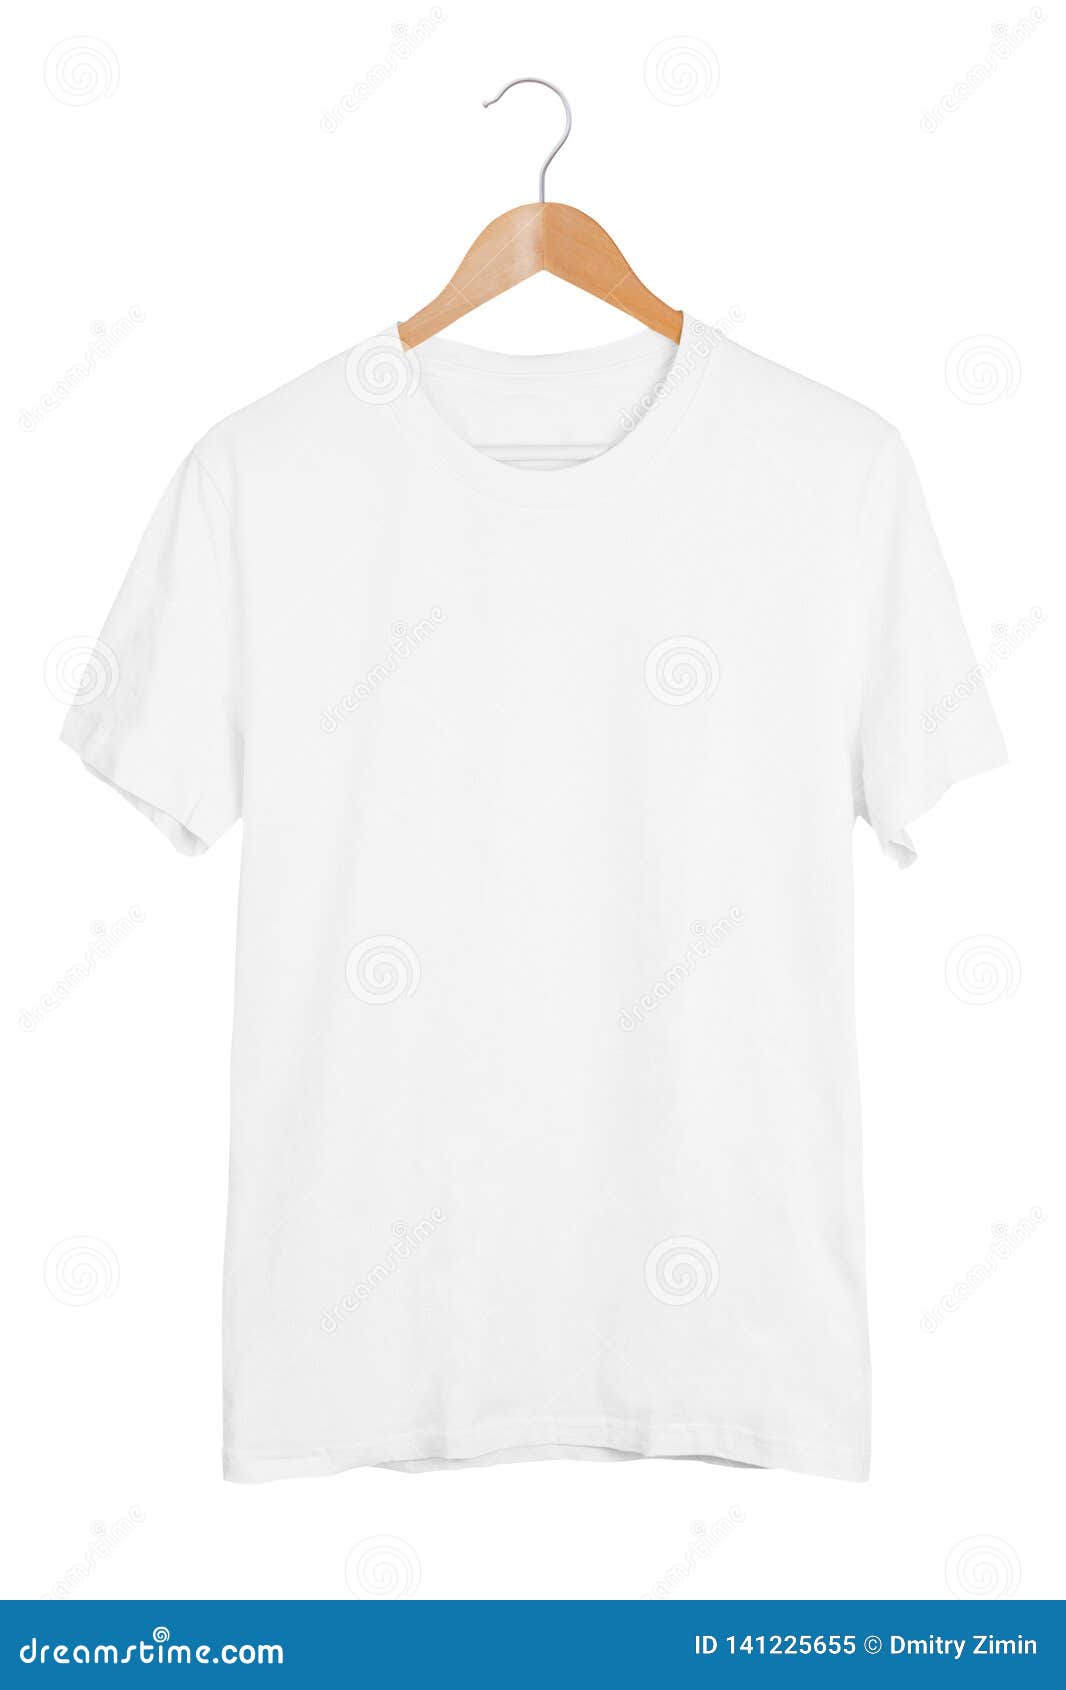 T-shirt Mockup HD: Thiết kế áo thun đỉnh cao để bắt đầu kinh doanh!